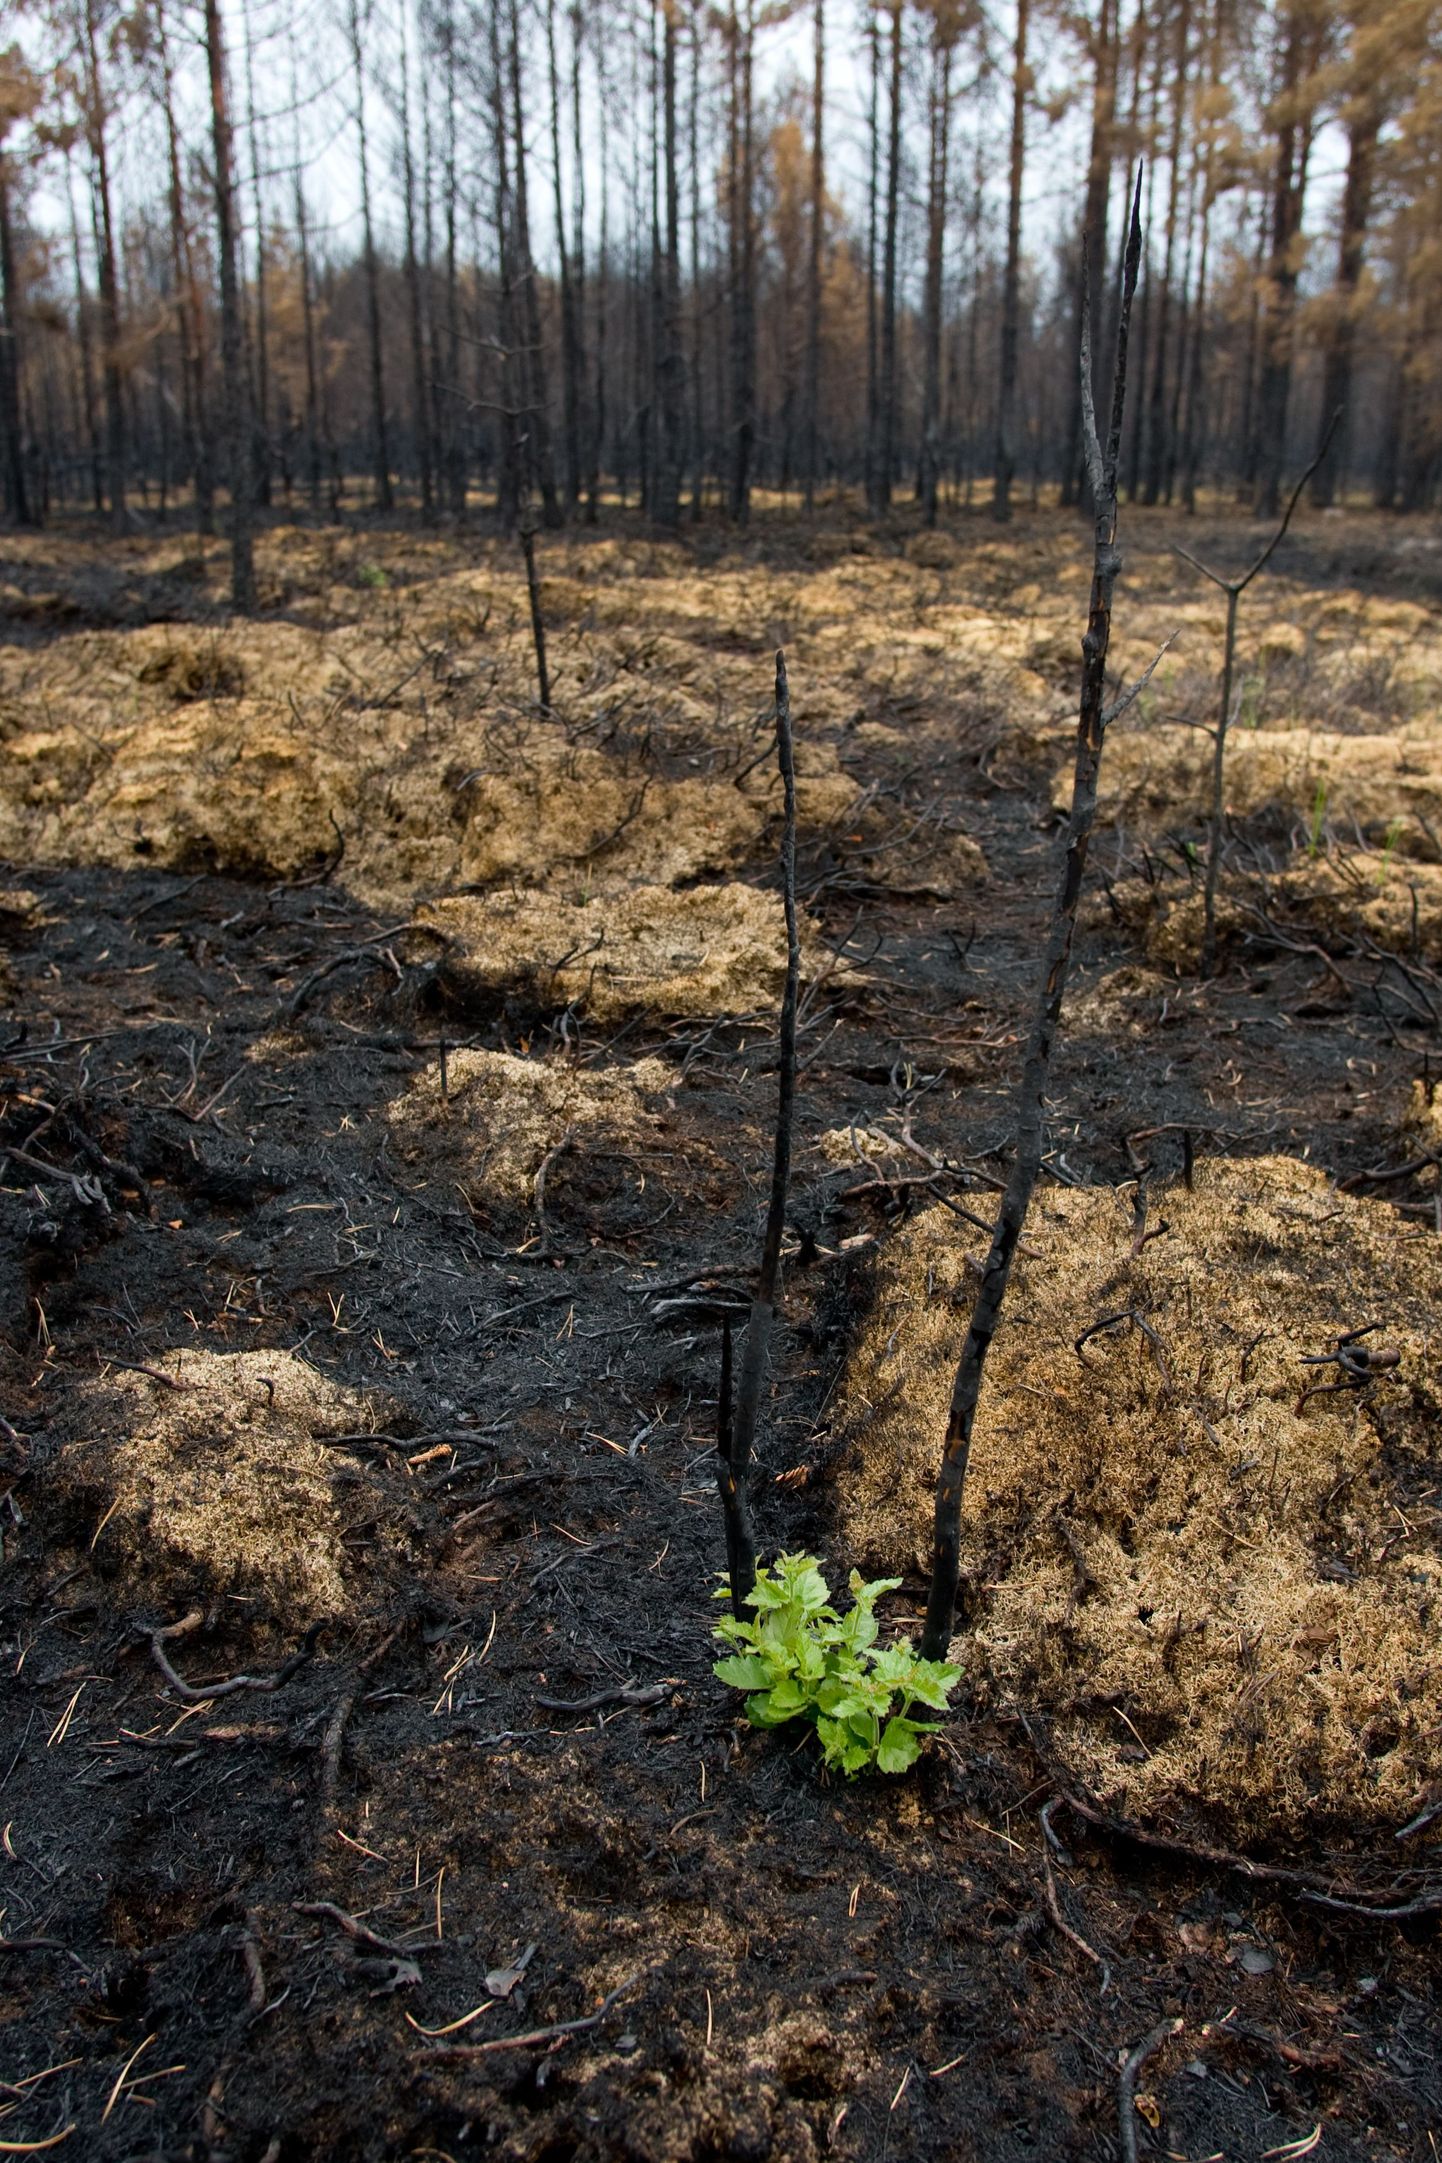 Juba neli nädalat pärast laastavat põlengut tärkab Vihterpalus taas elu – ühena esimestest ajavad mustavast
pinnasest ninad välja rohelised karvasevõitu lehtedega kasevõsud. Suured põlenud tüved tuleb metsameestel
aga maha raiuda.